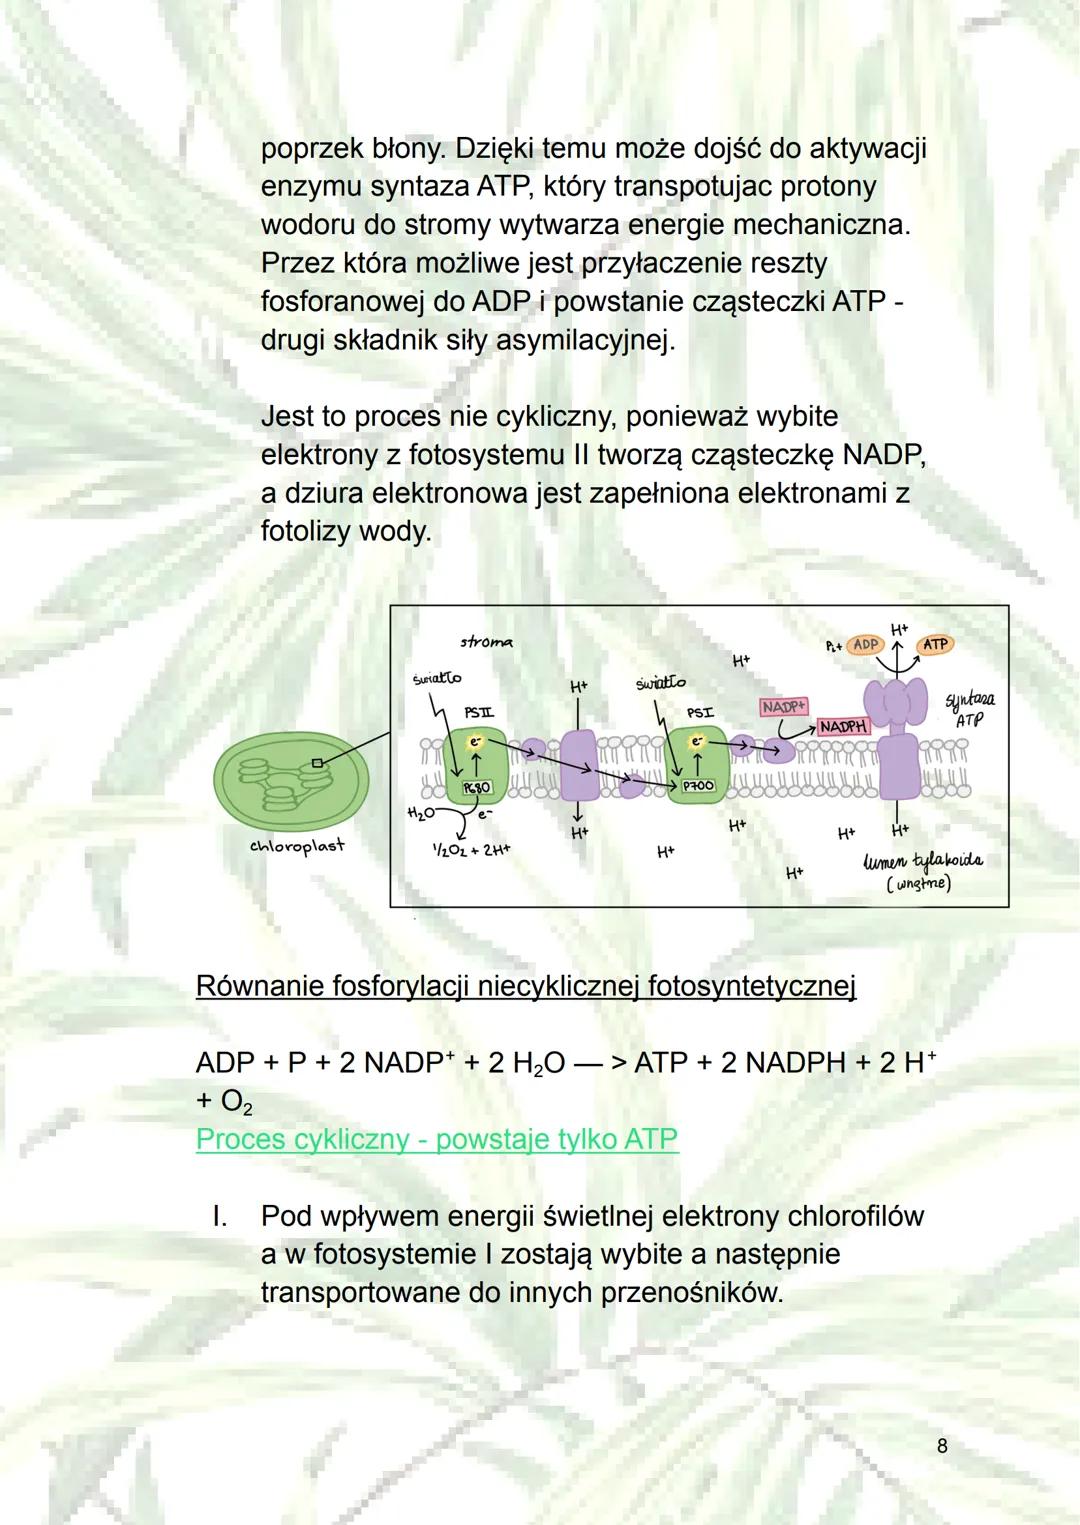 Fotosynteza
1. Autotrofizm - samodzielne wytwarzanie sobie
składników odżywczych (z związków
nieorganicznych do organicznych); rodzaj
odżywi